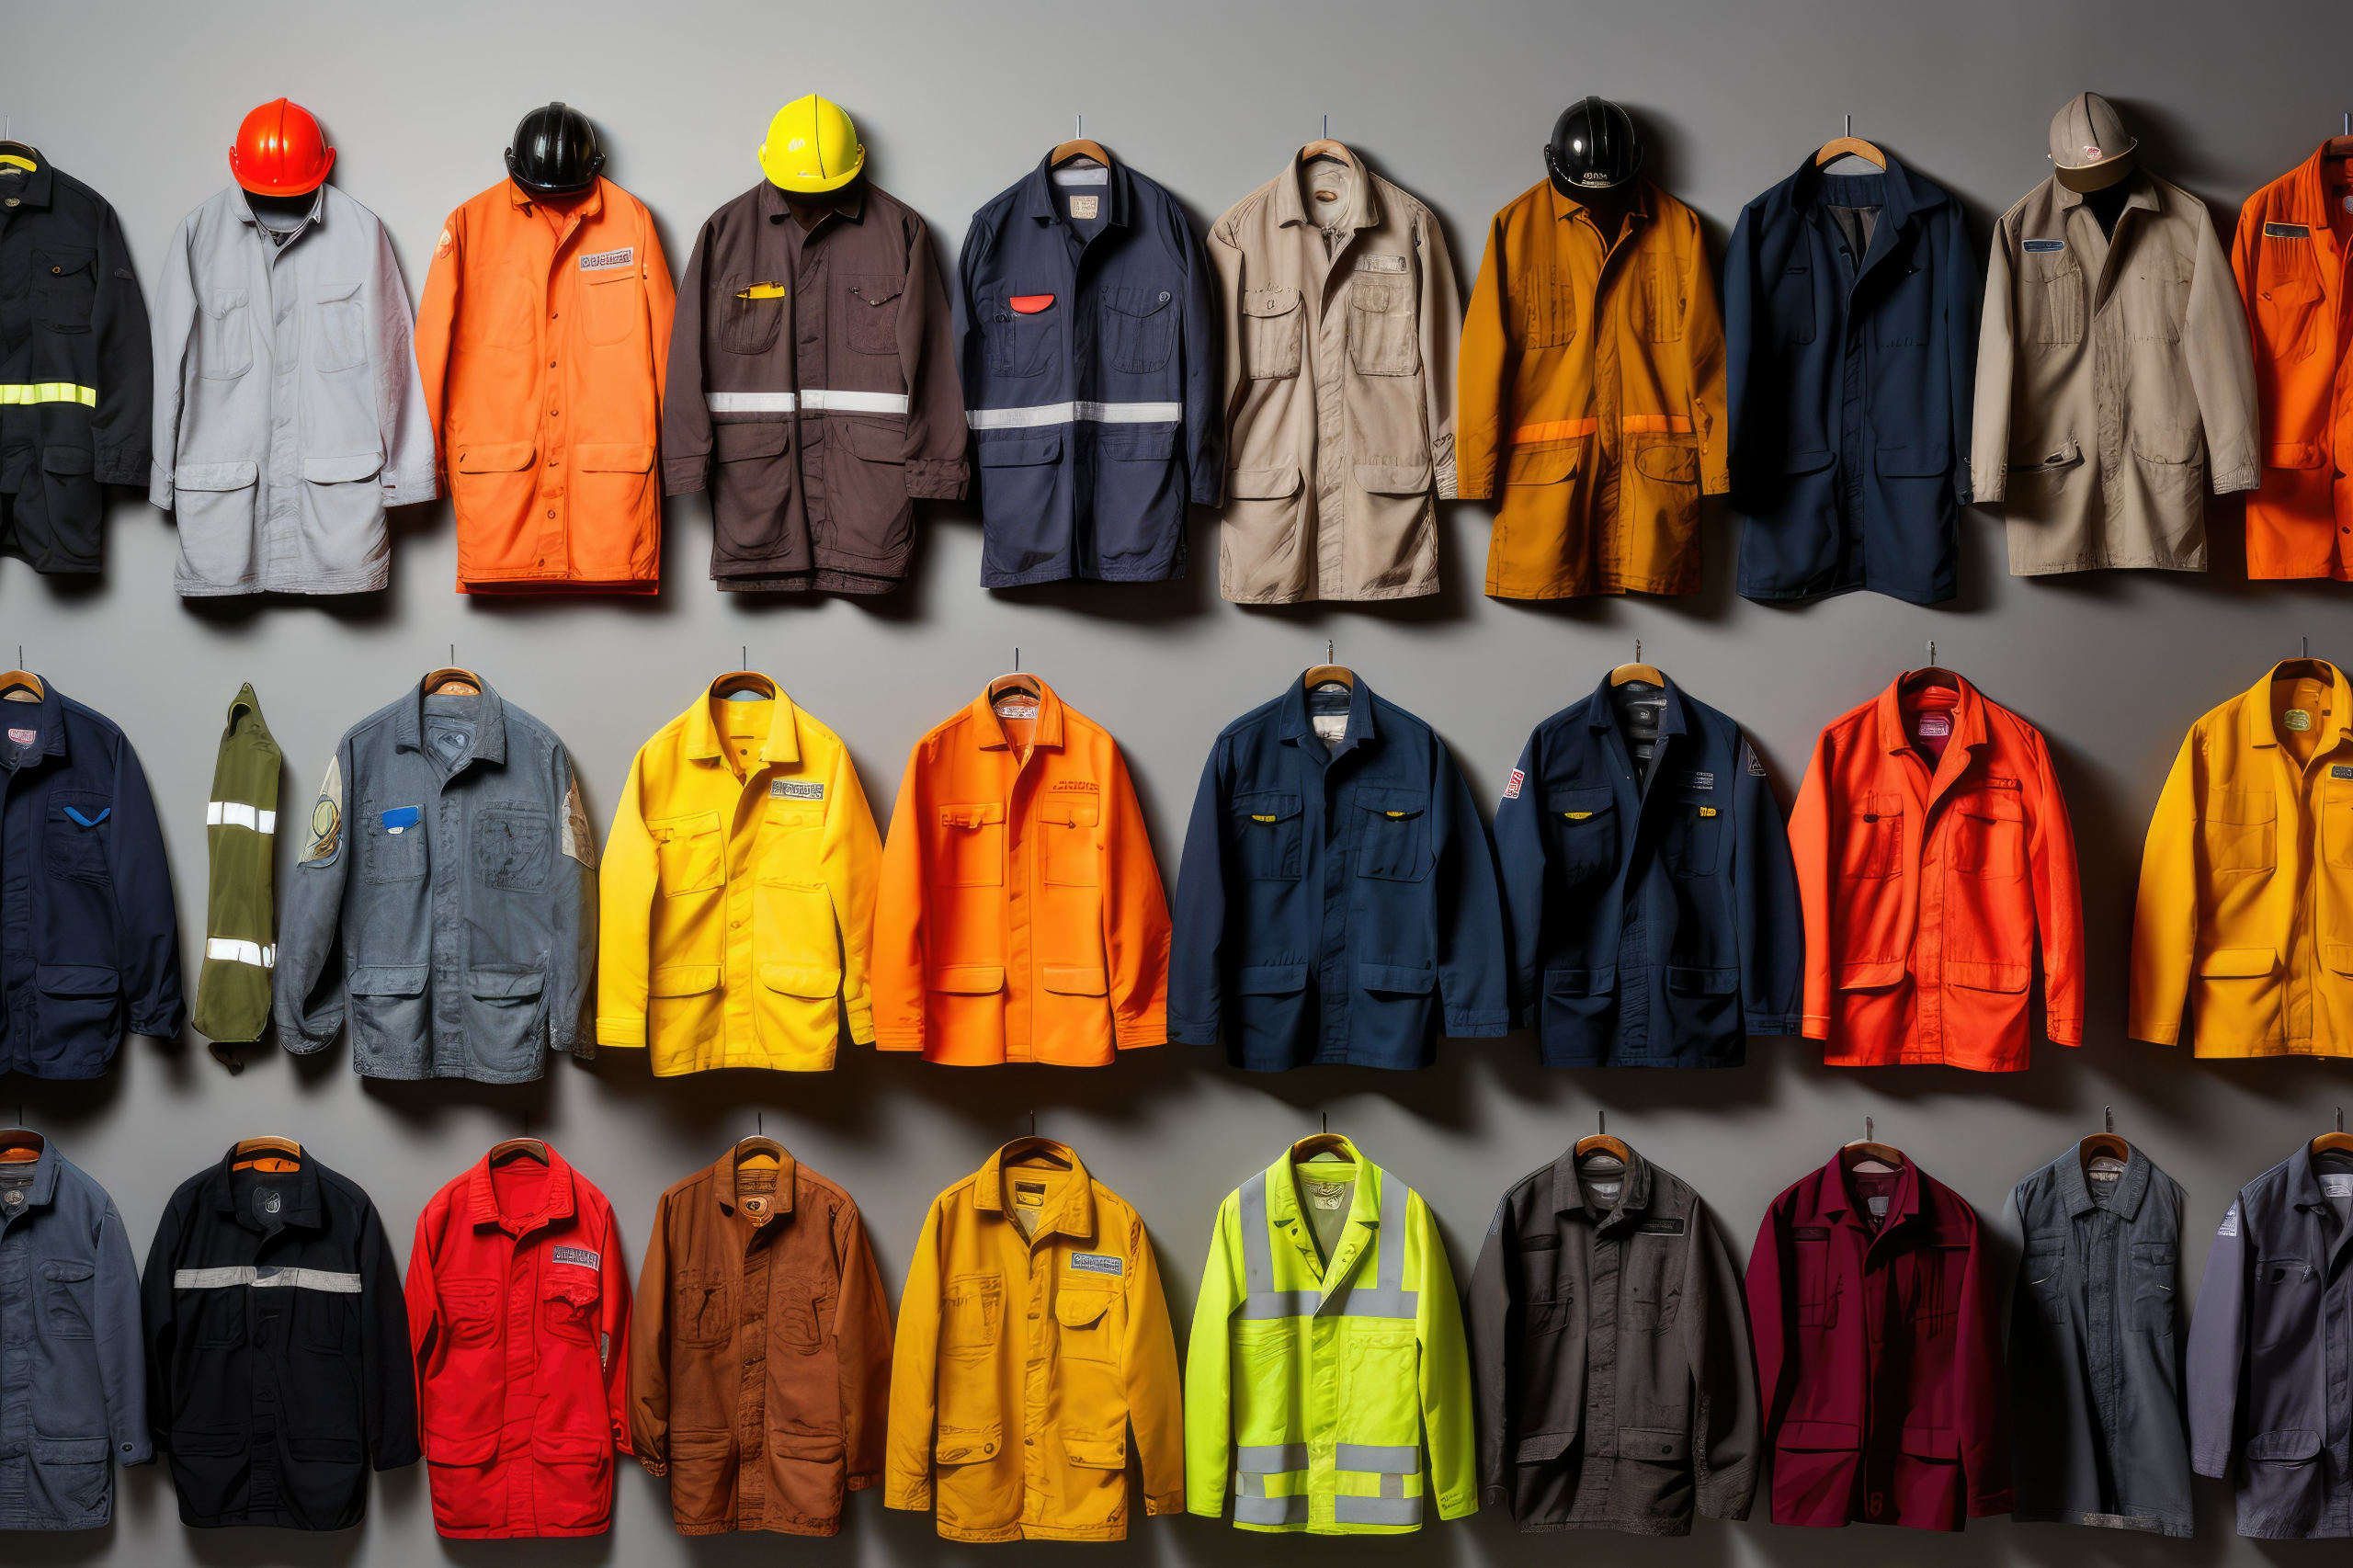 Verschiedene Jacken und Uniformen aus unterschiedlichen Berufen. Symbolbild für den Betriebsrat.